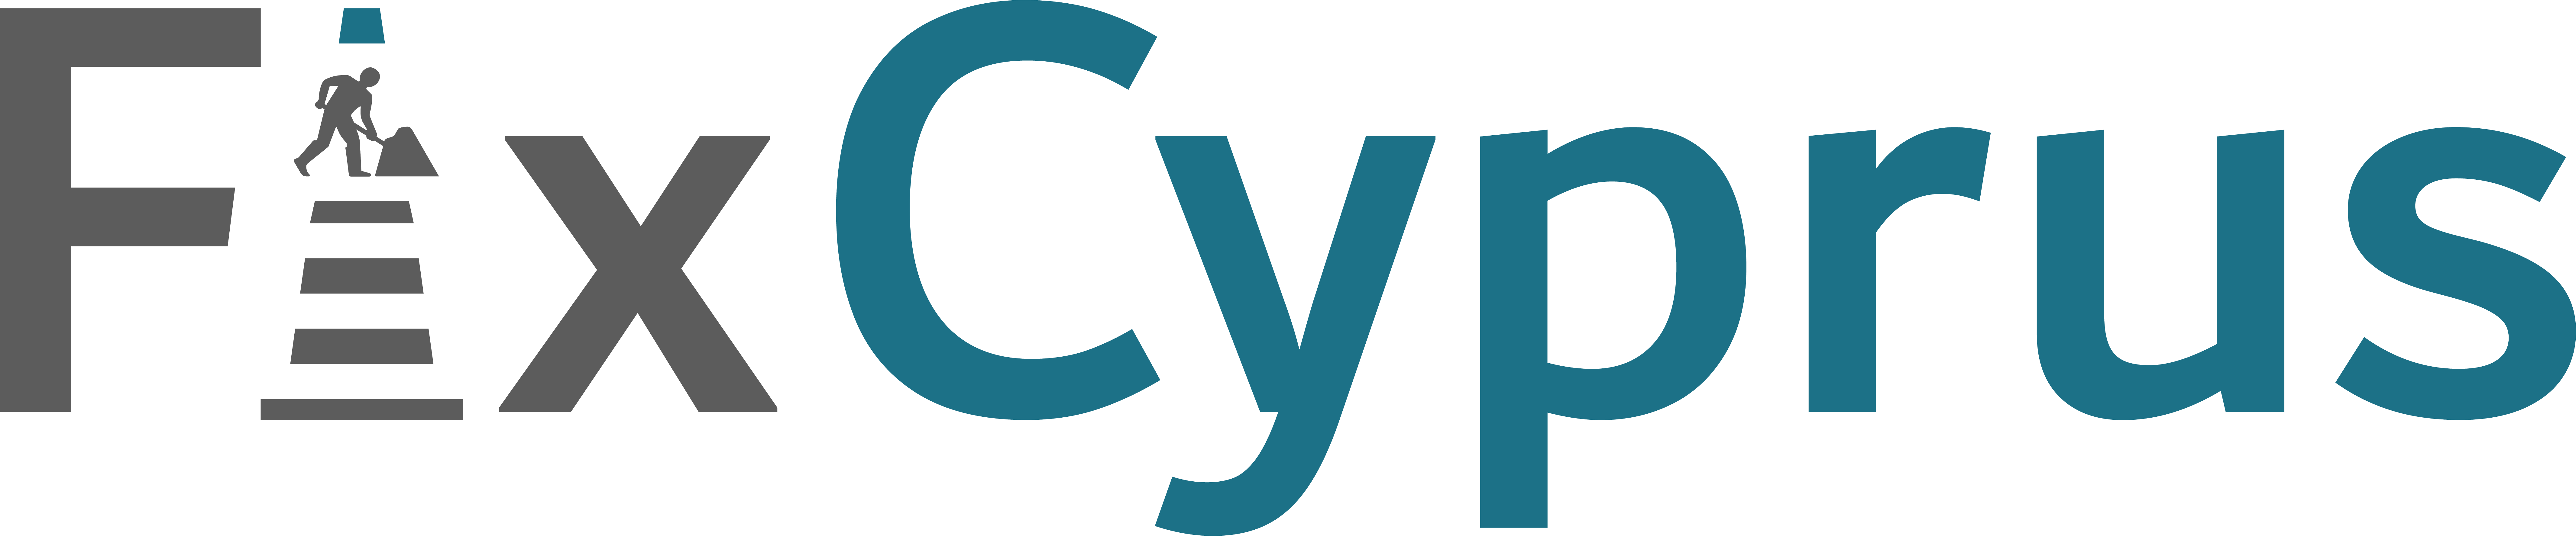 FixCyprus logo